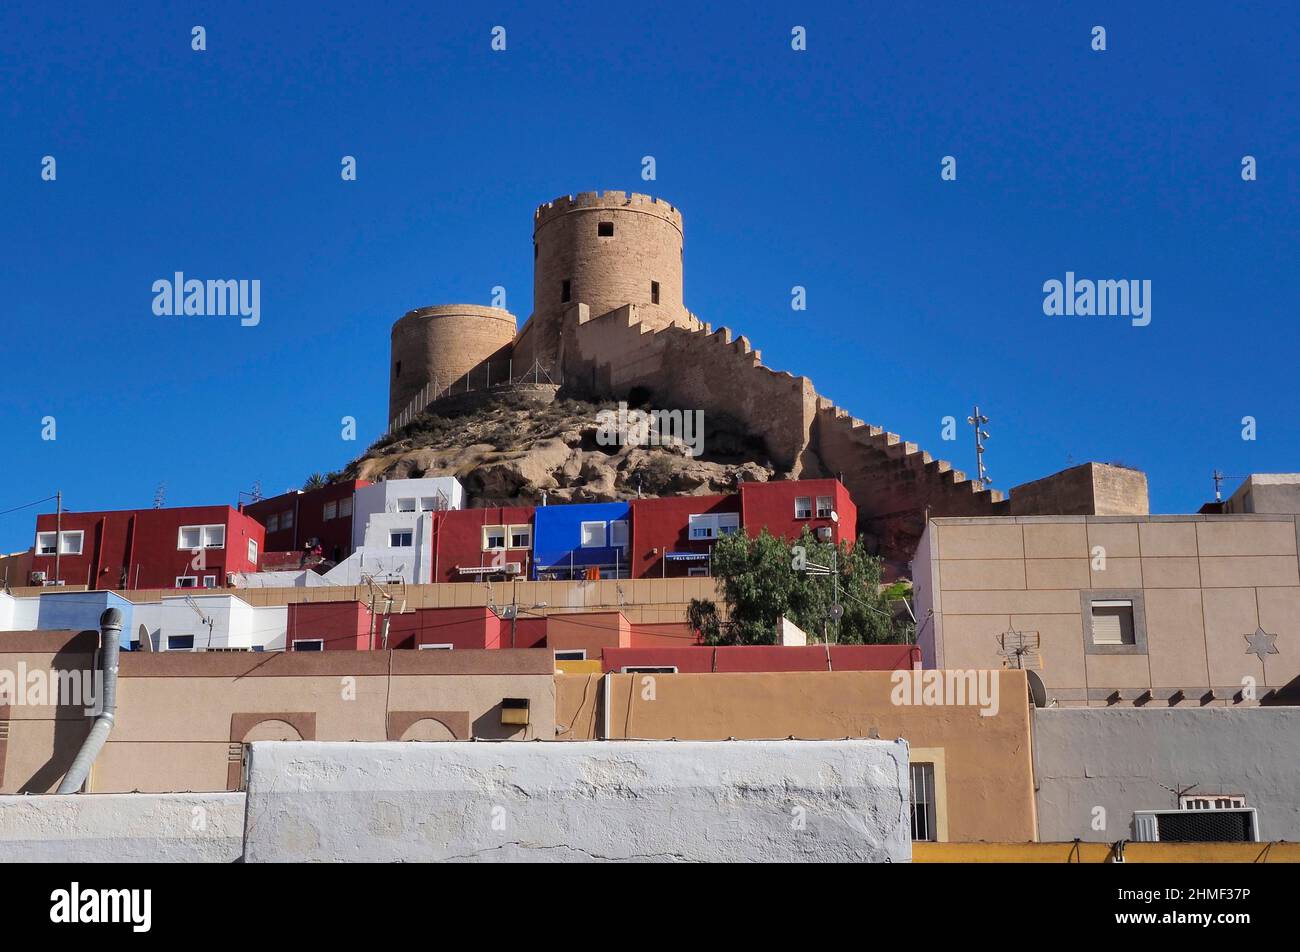 La chanca barrio almeria fotografías e imágenes de alta resolución - Alamy